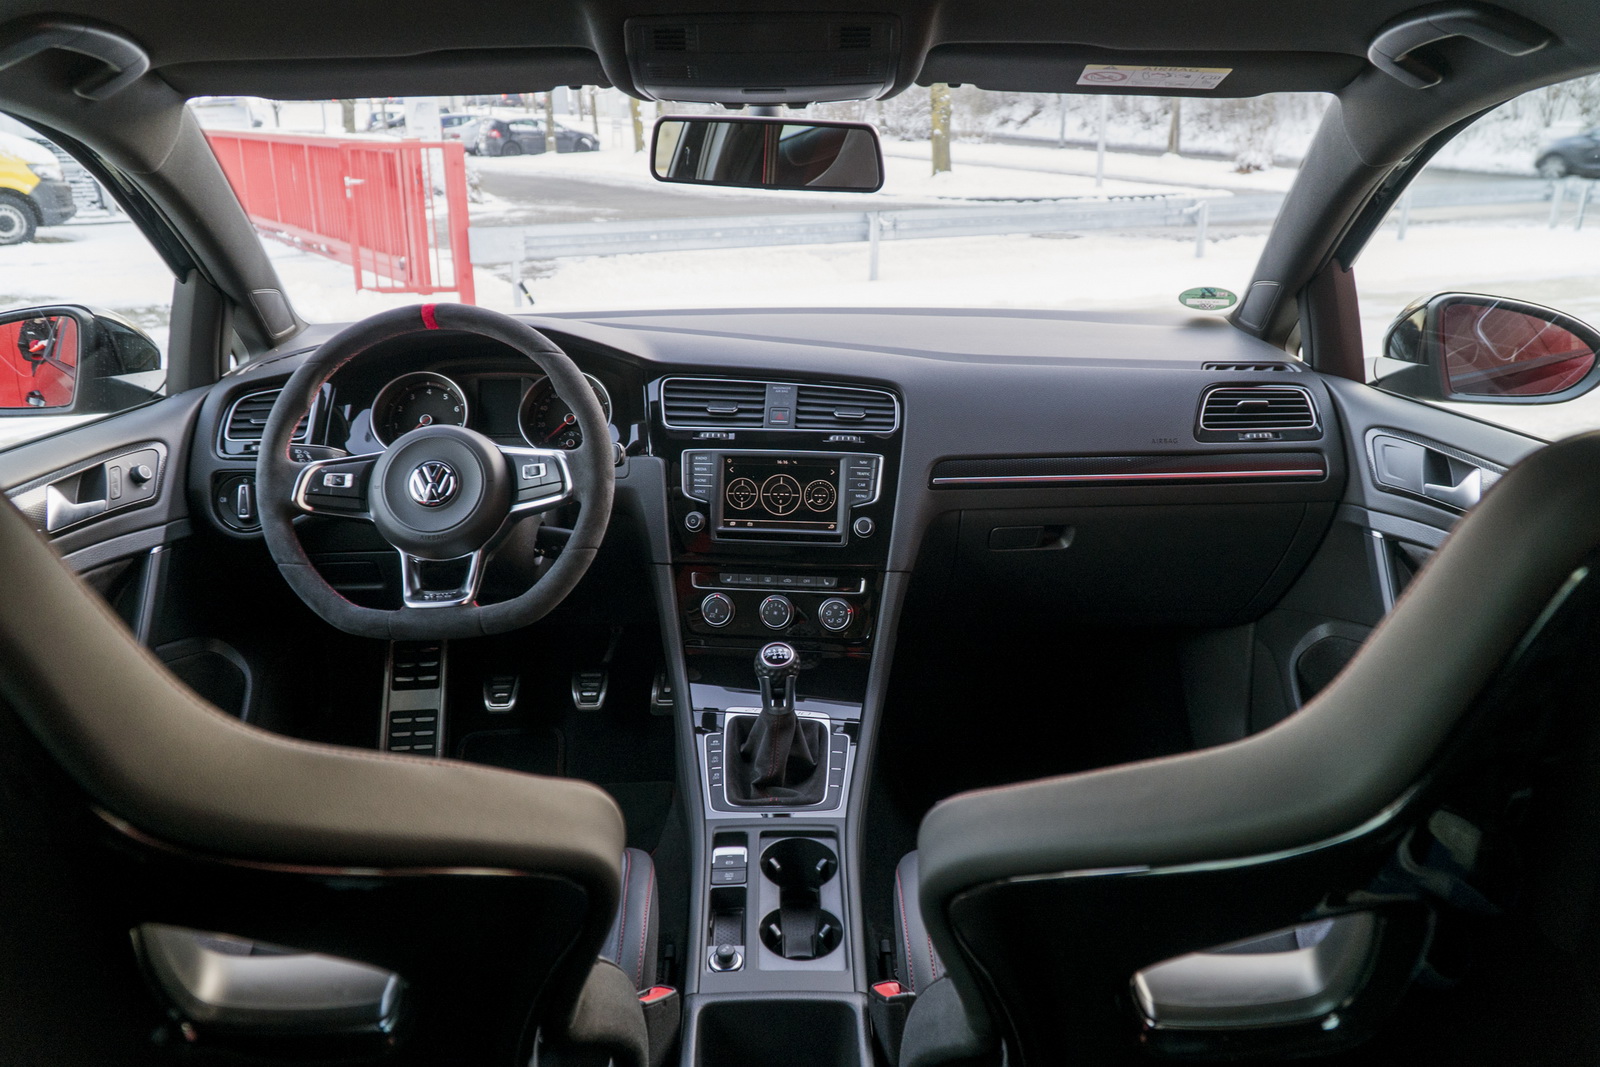 370 CV son posibles en el Volkswagen Golf GTI Clubsport S gracias a ABT